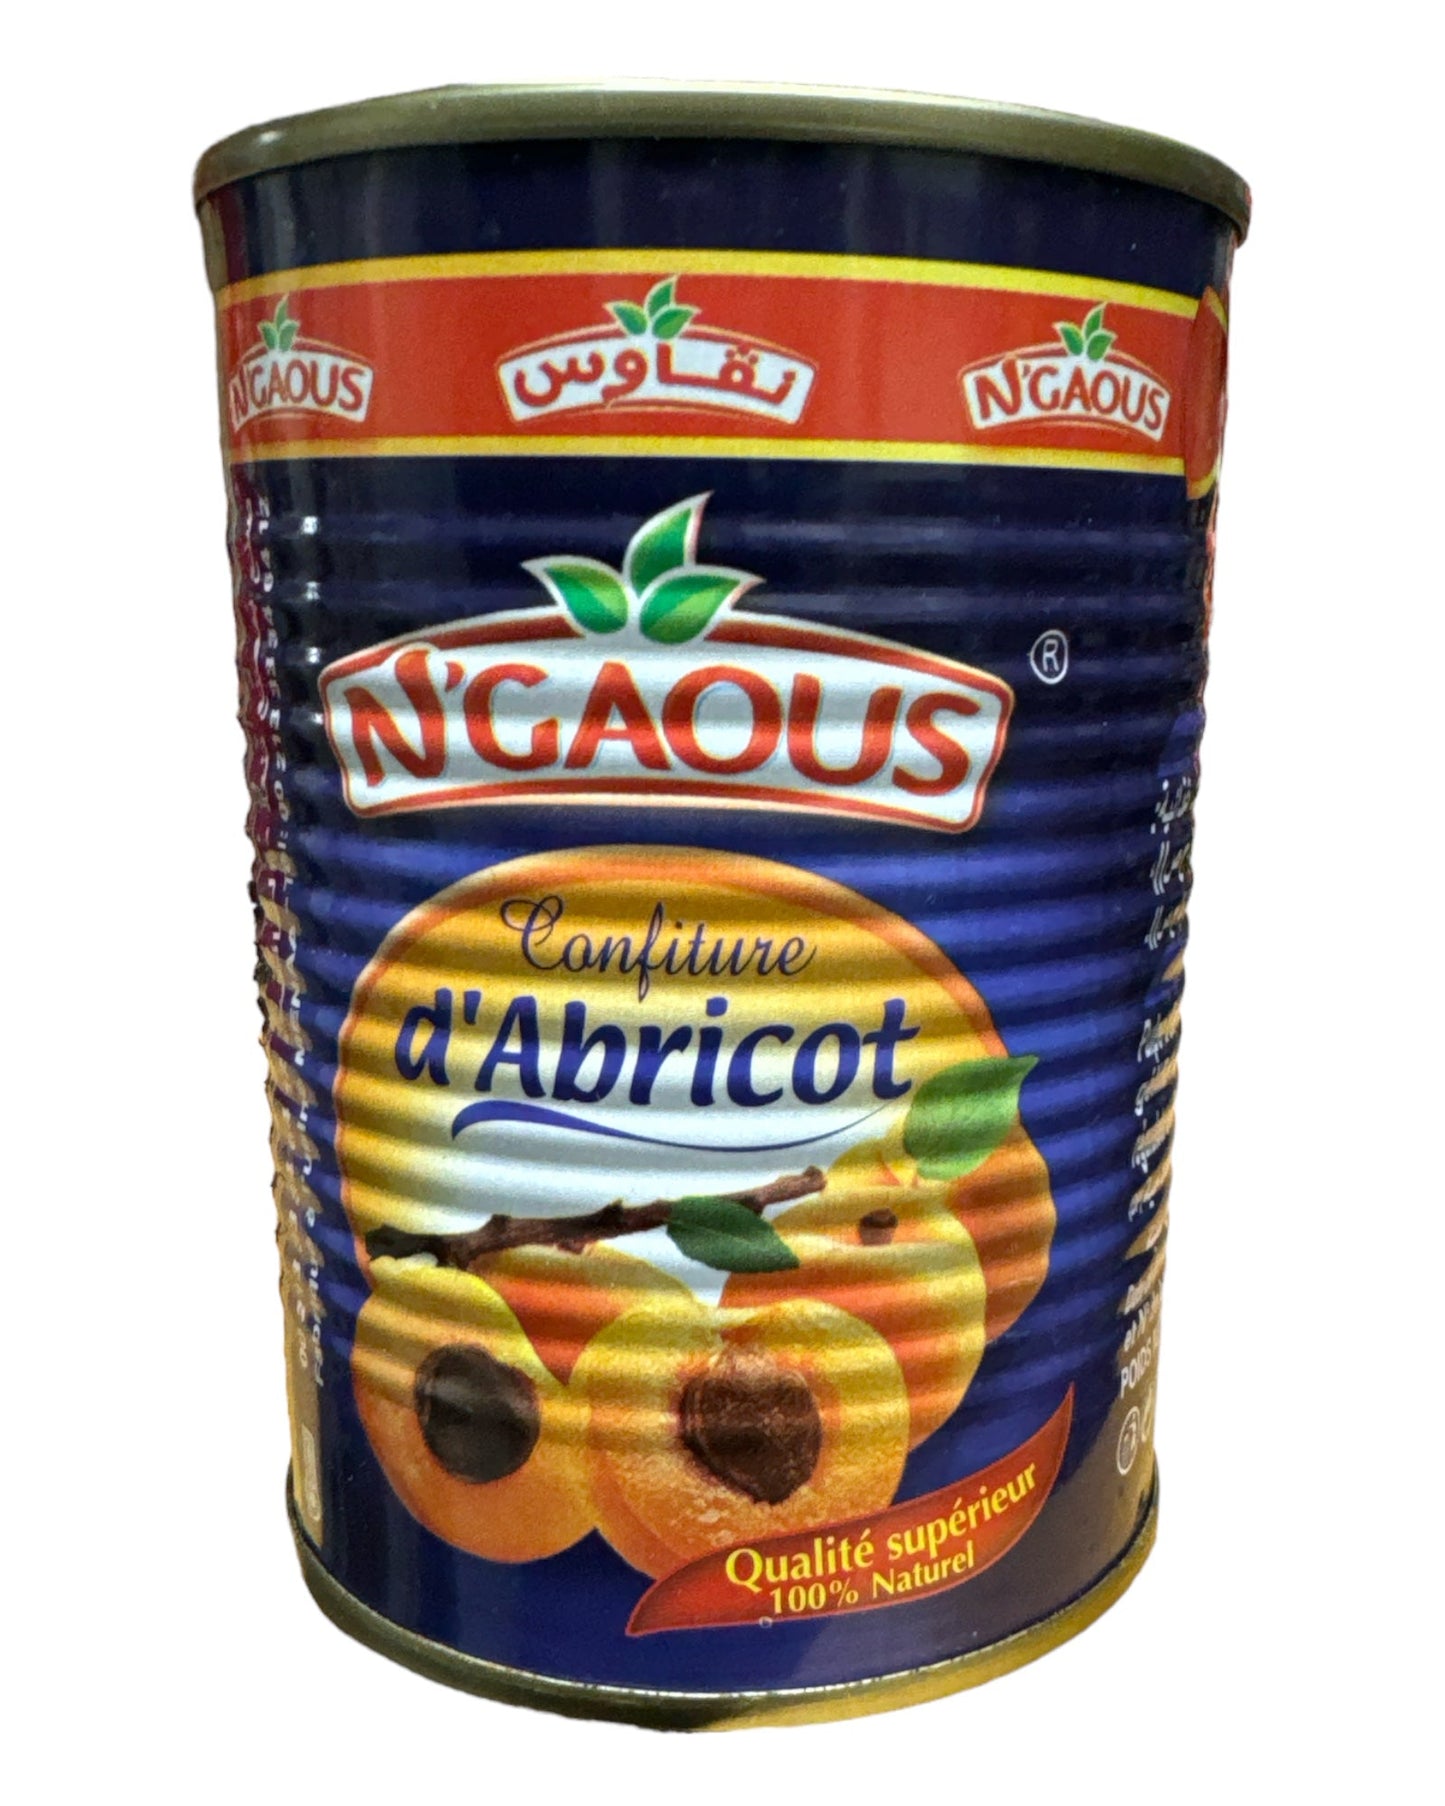 Ngaous Apricot Jam CAB 400g